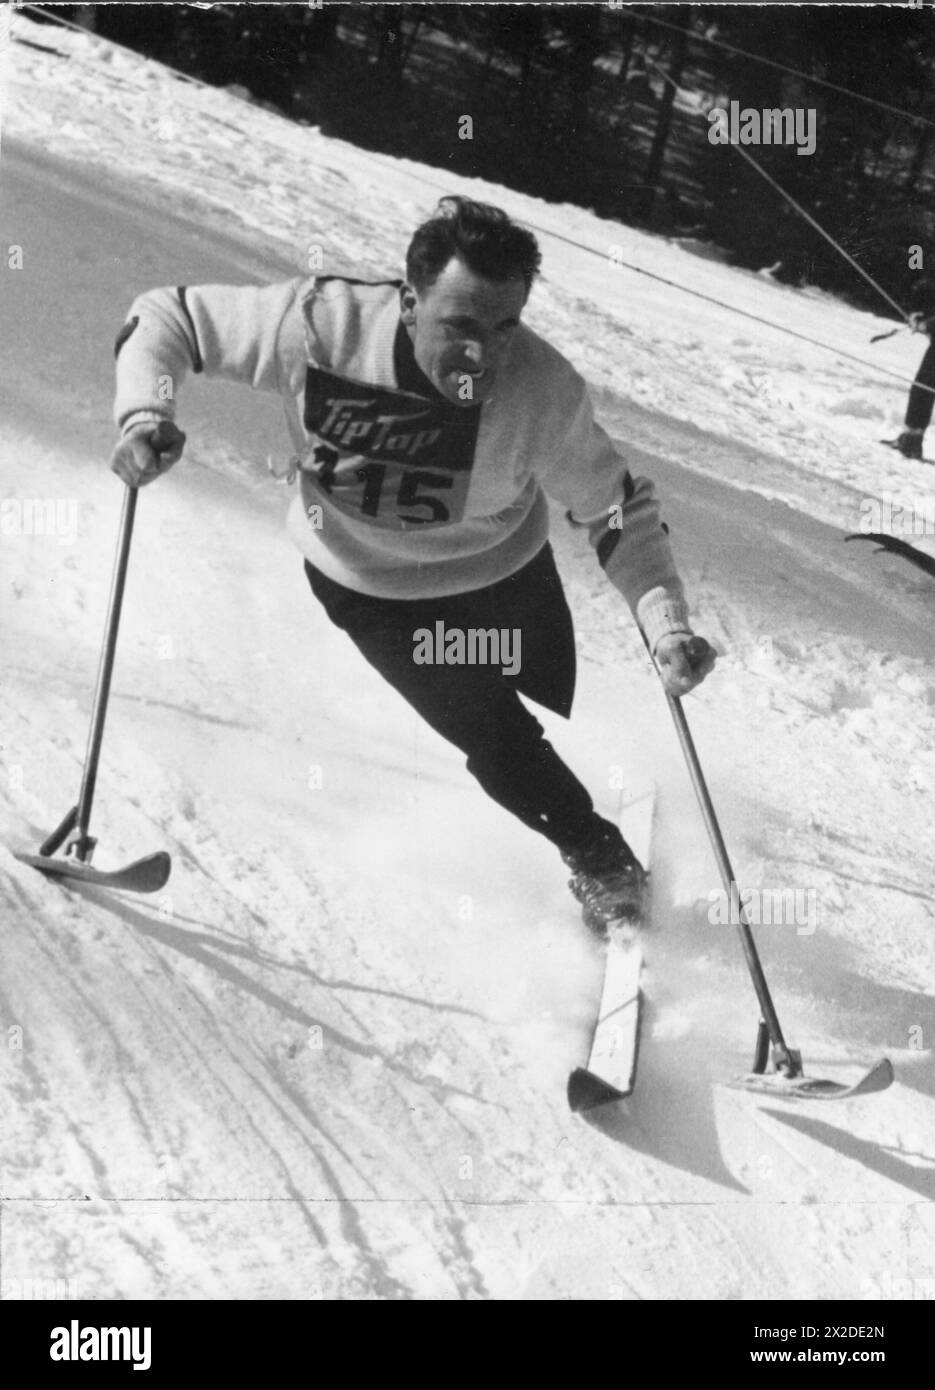 Steiner, Erich, 23.7.1917 - 6,6.1997, peintre et skieur autrichien, sur le chemin vers le bas, années 1950, ADDITIONAL-RIGHTS-CLEARANCE-INFO-NOT-AVAILABLE Banque D'Images